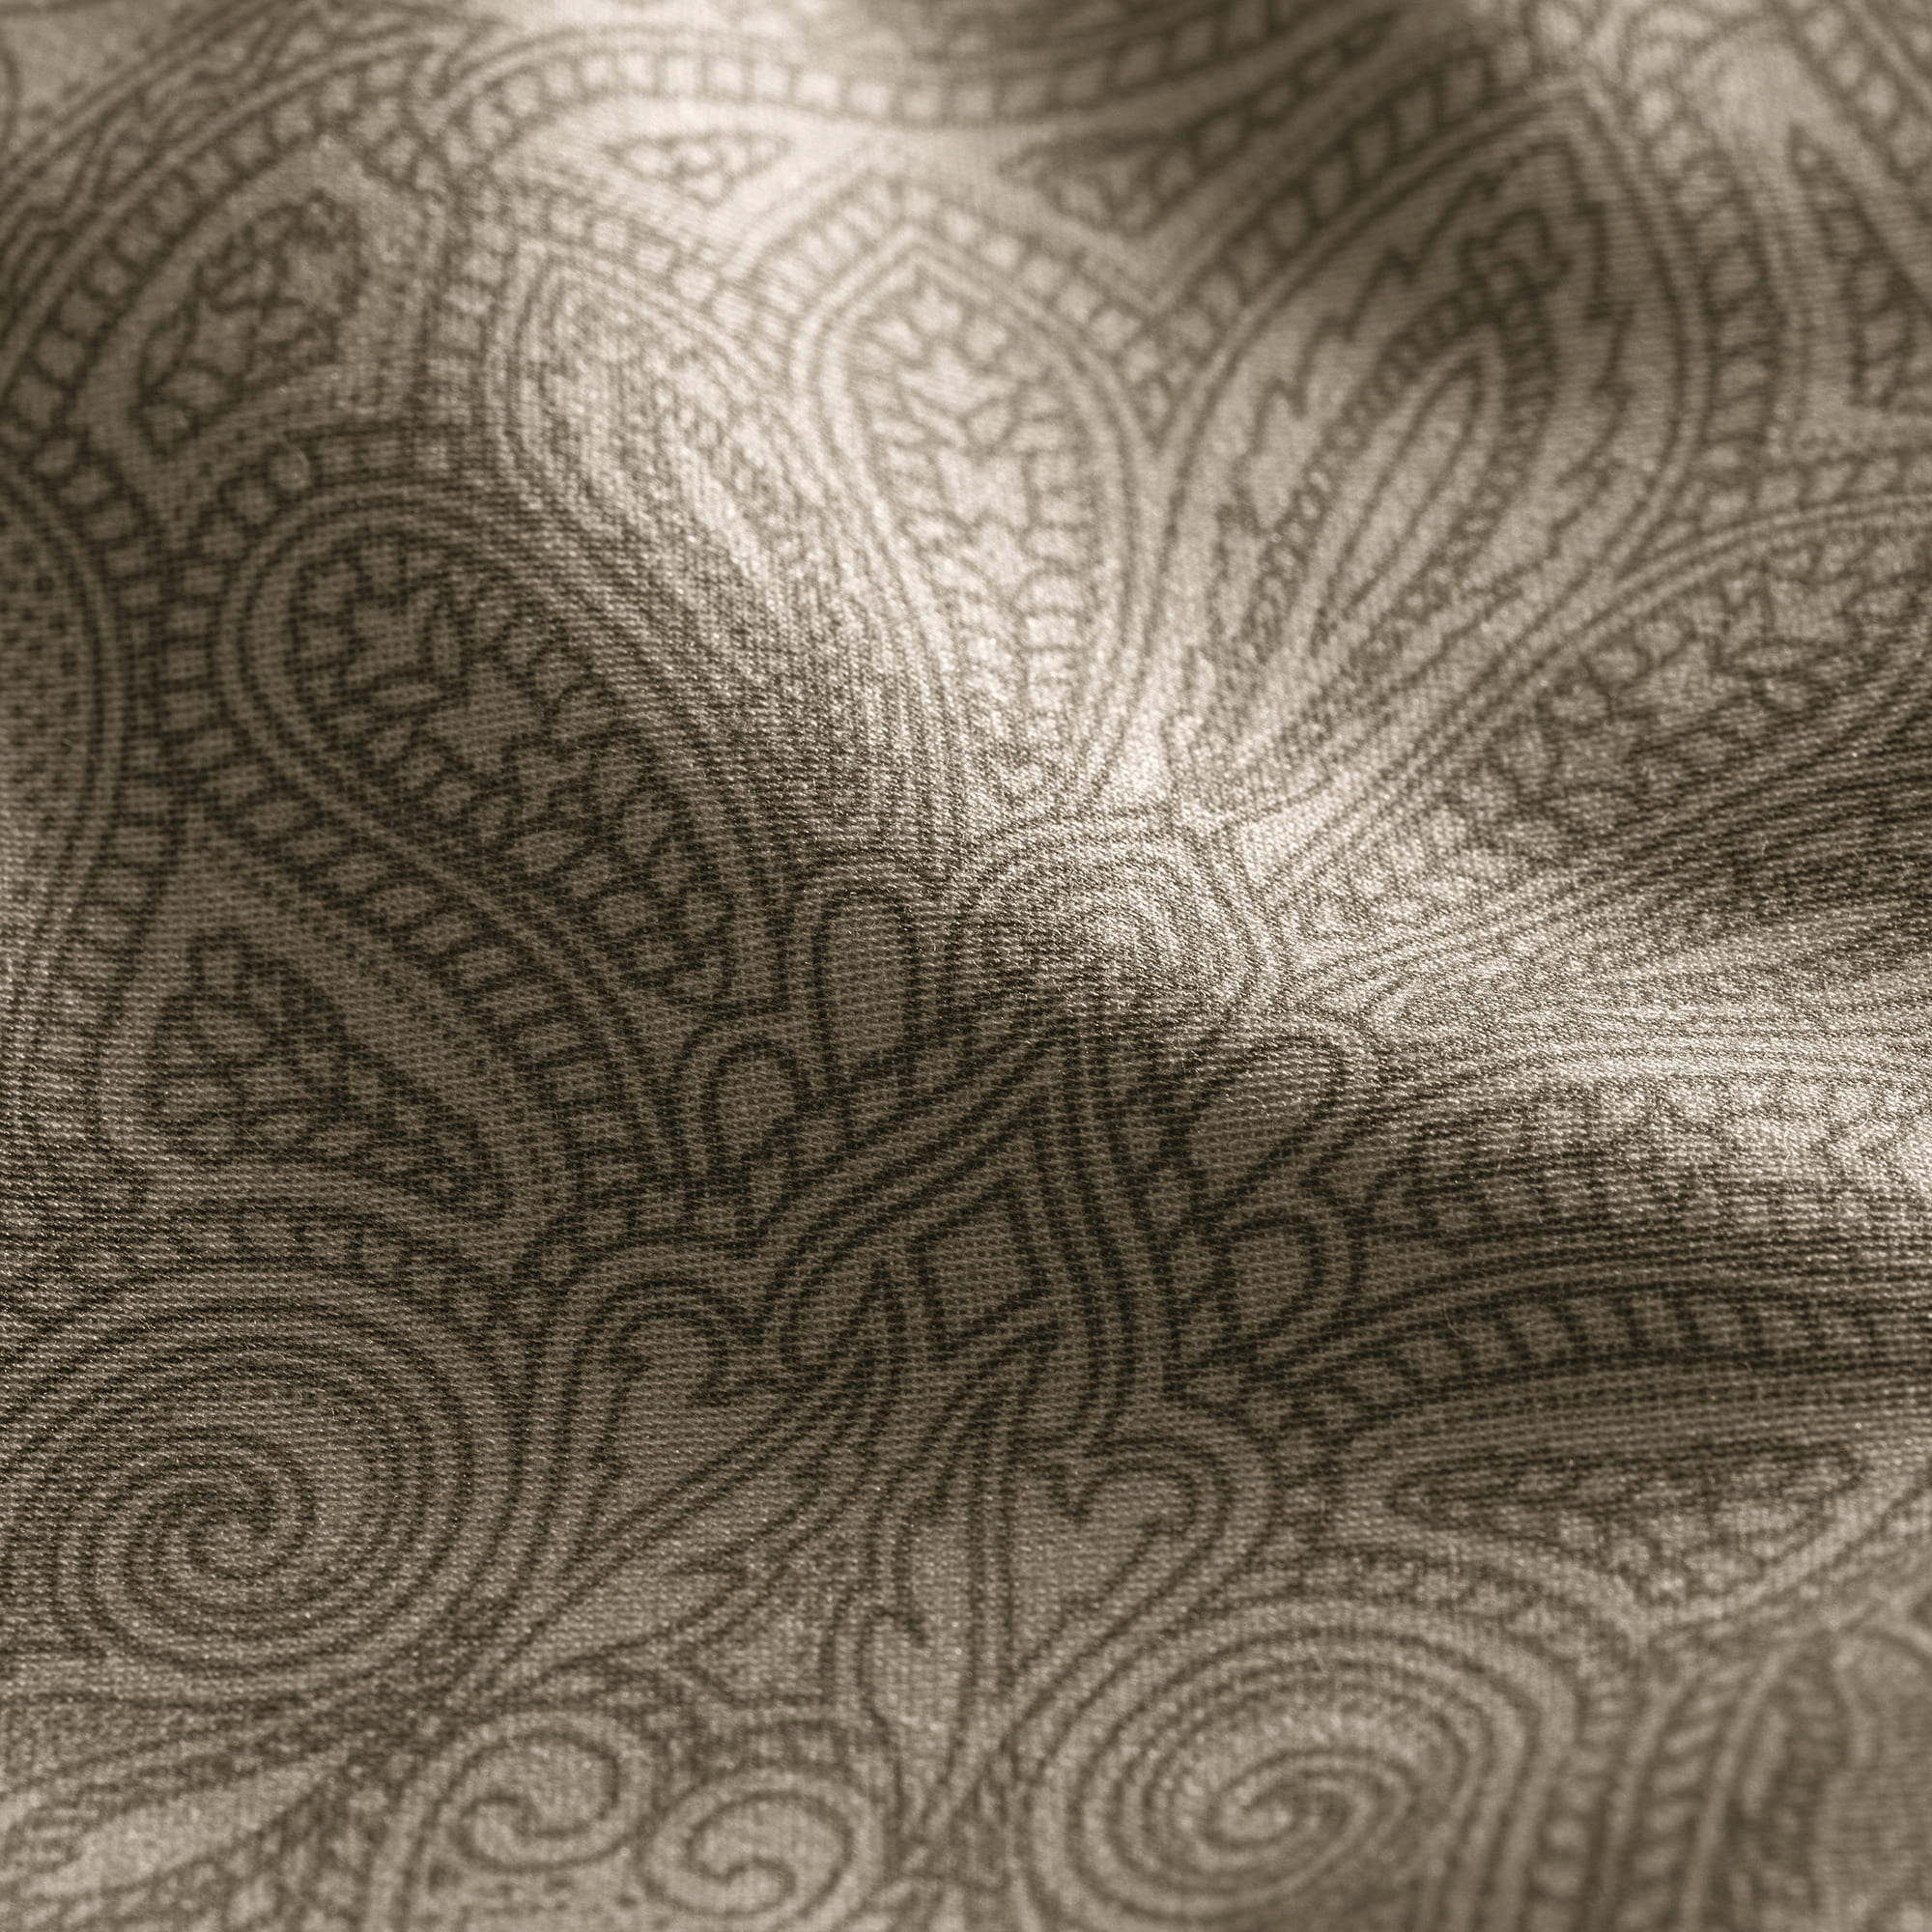 Комплект постельного белья Togas Лавинье коричневый Двуспальный кинг сайз, размер Кинг сайз - фото 7